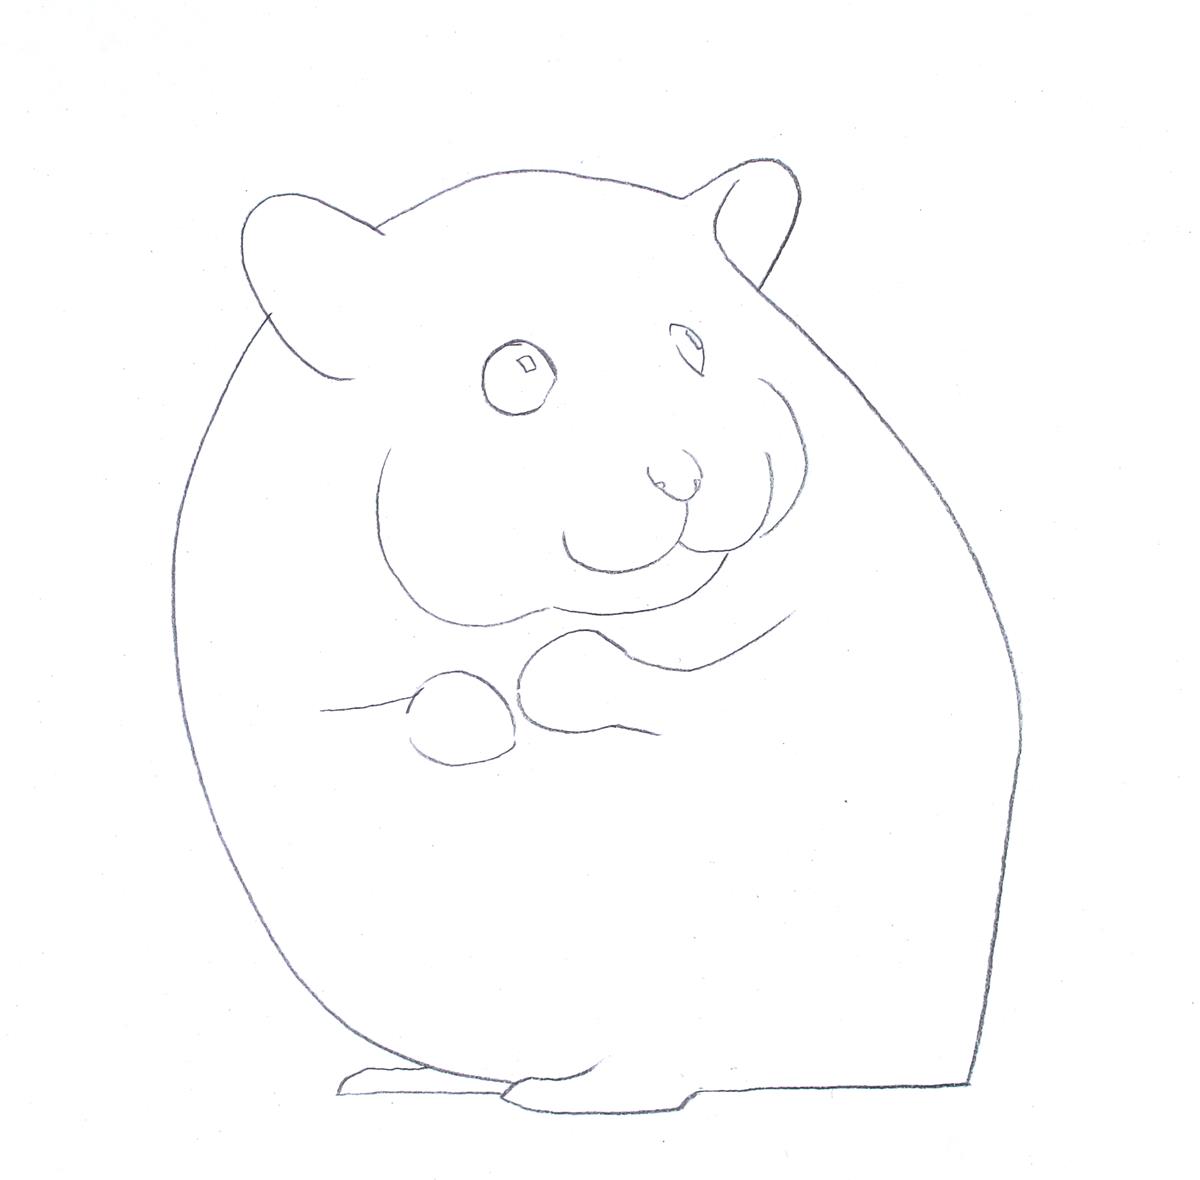 用python画小仓鼠教程_彩色铅笔画步骤教程：小仓鼠的画法-CSDN博客